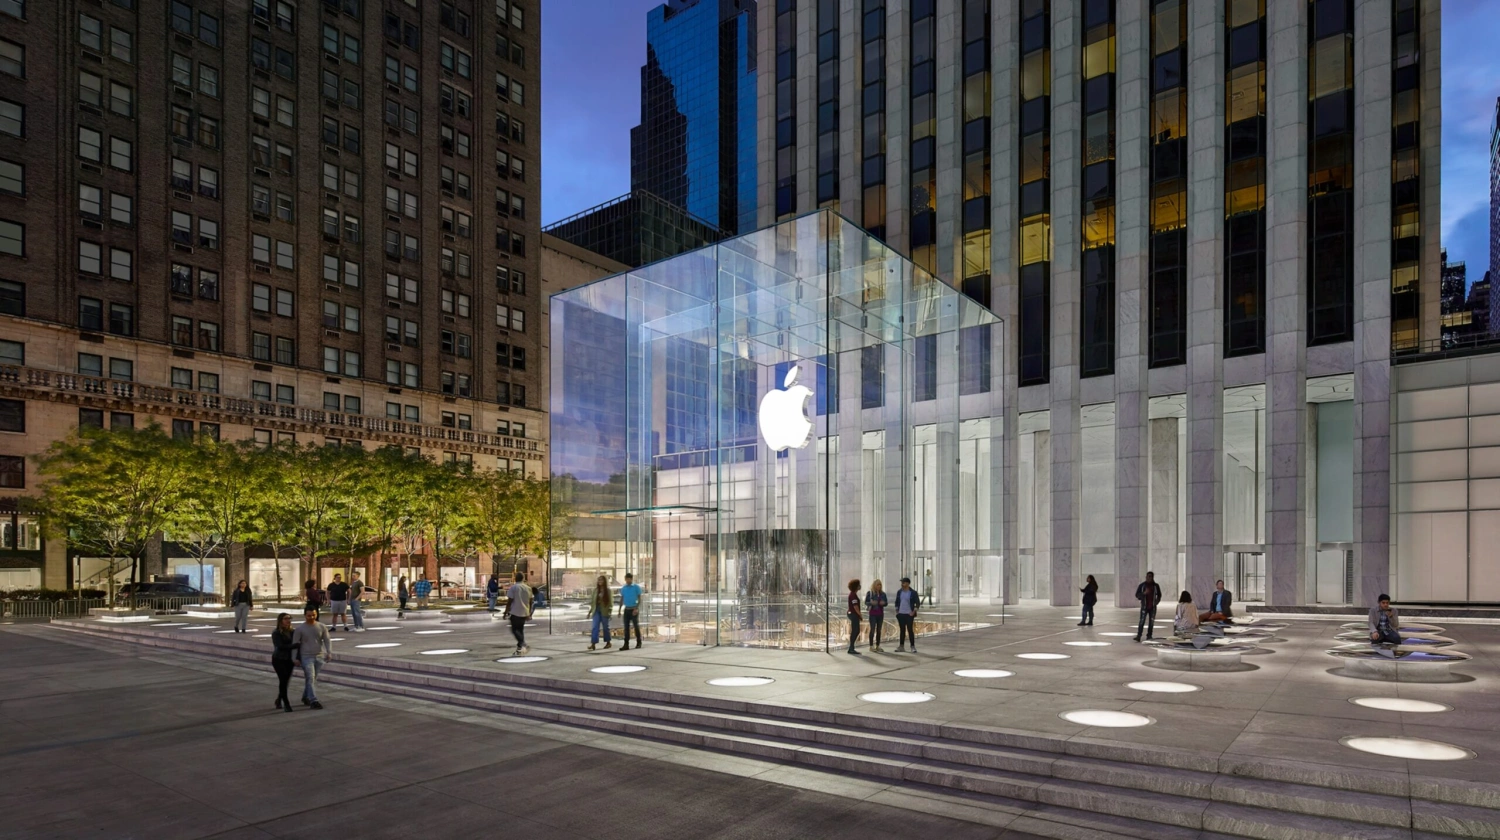 Álomszerűen újraélni az adott pillanatot – így próbáltam ki az Apple új nagy dobását New York közepén